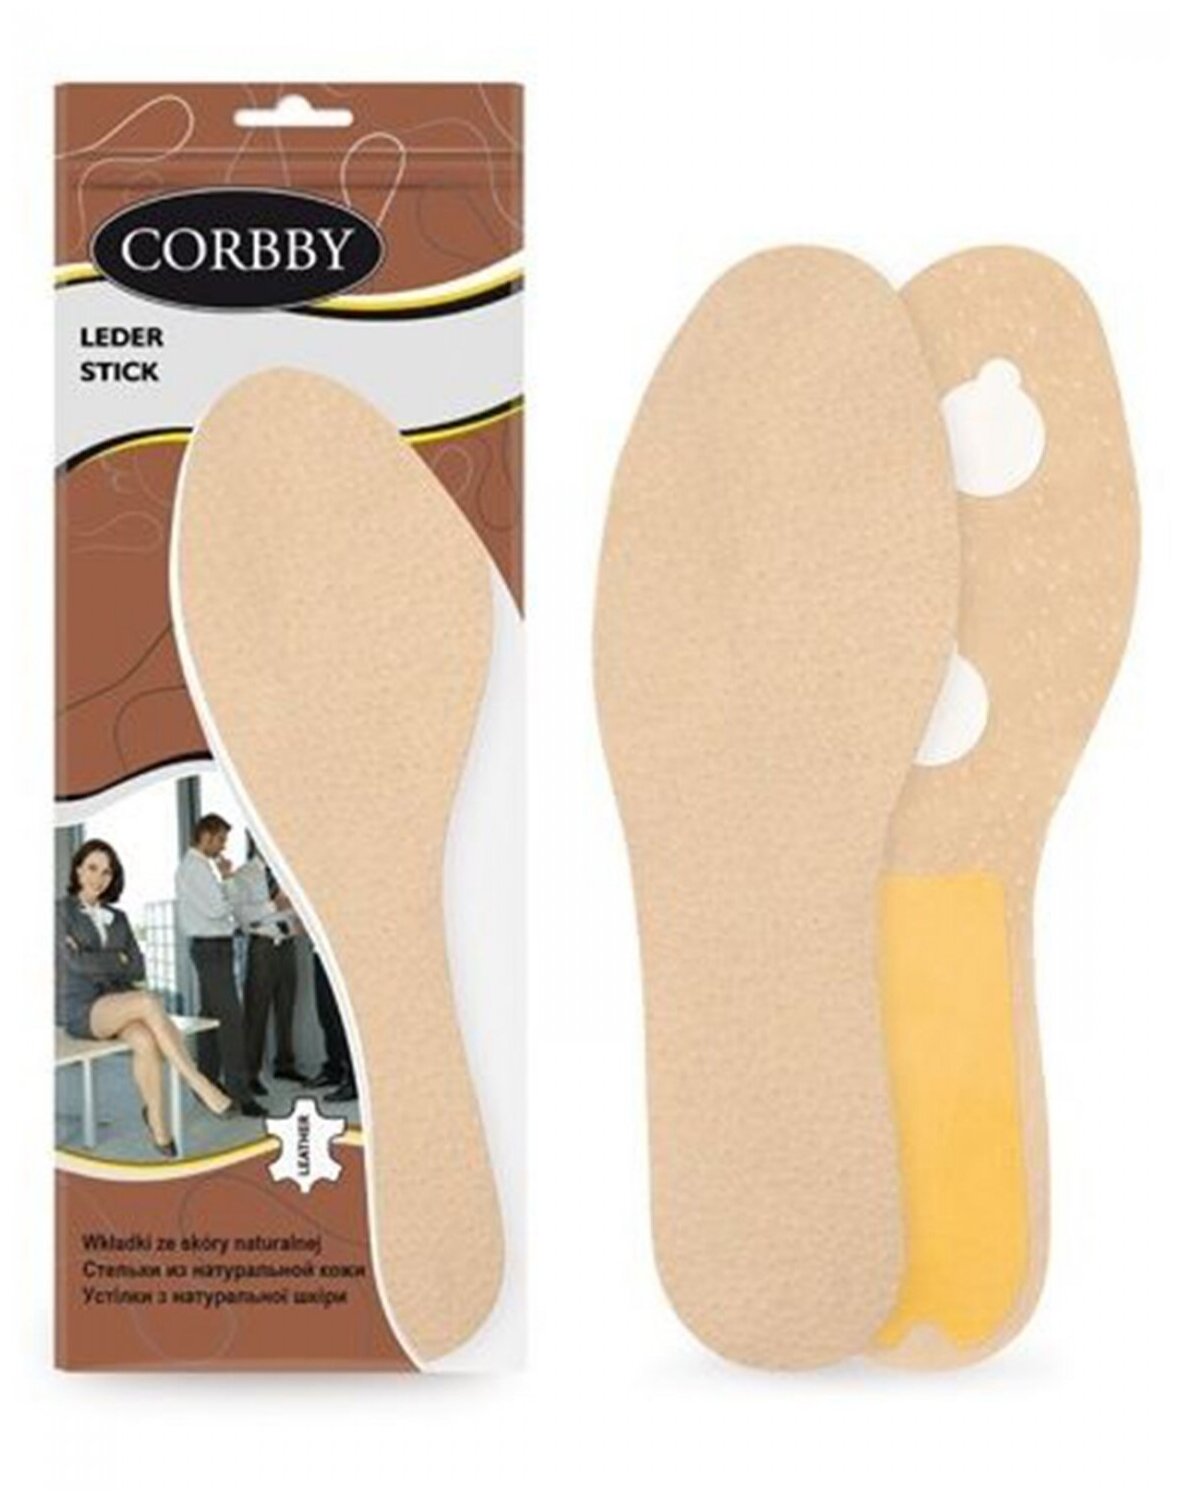 Corbby LEDER STICK Стельки из натуральной кожи и латексной пены. Размер 35/36